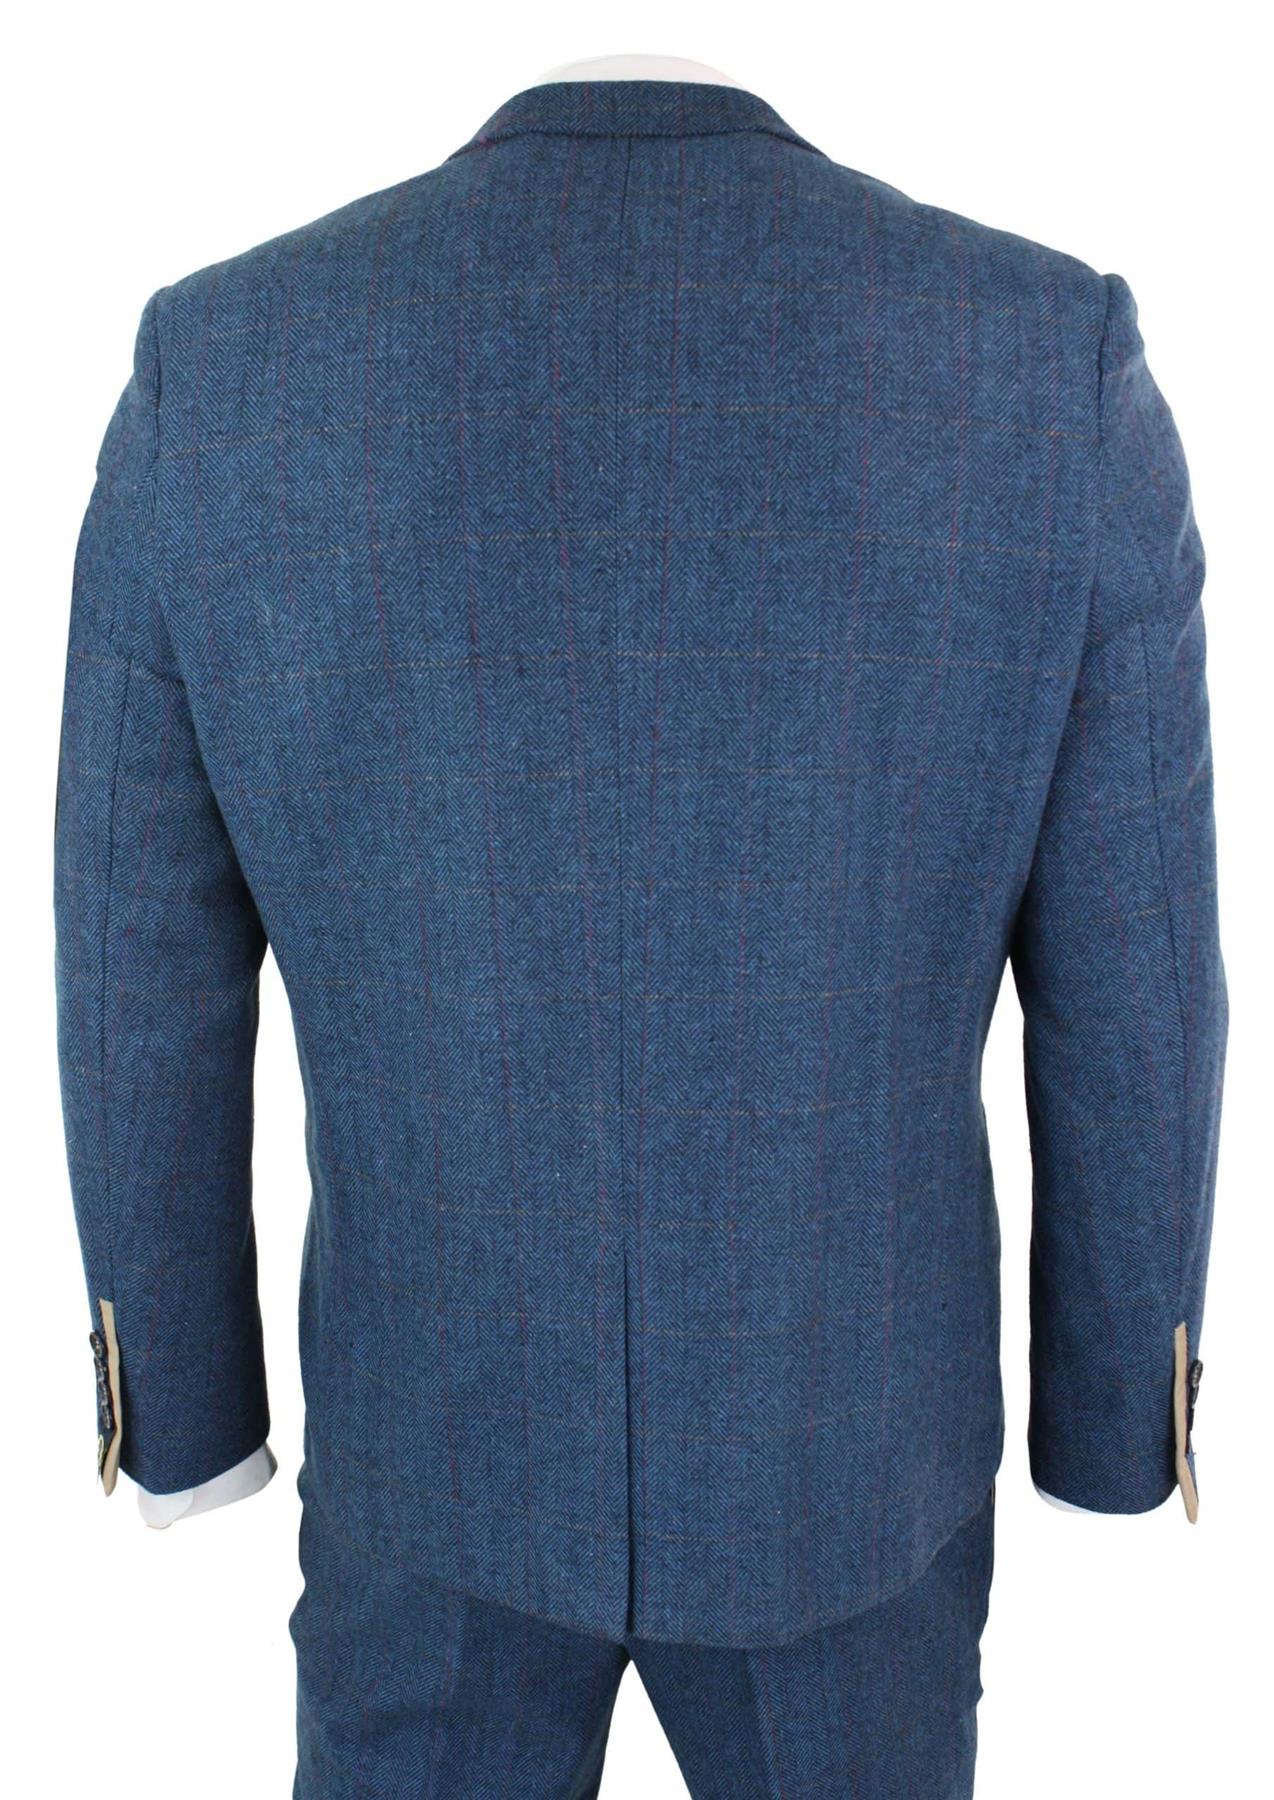 Mens 3 Piece Blue Tweed Vintage Suit